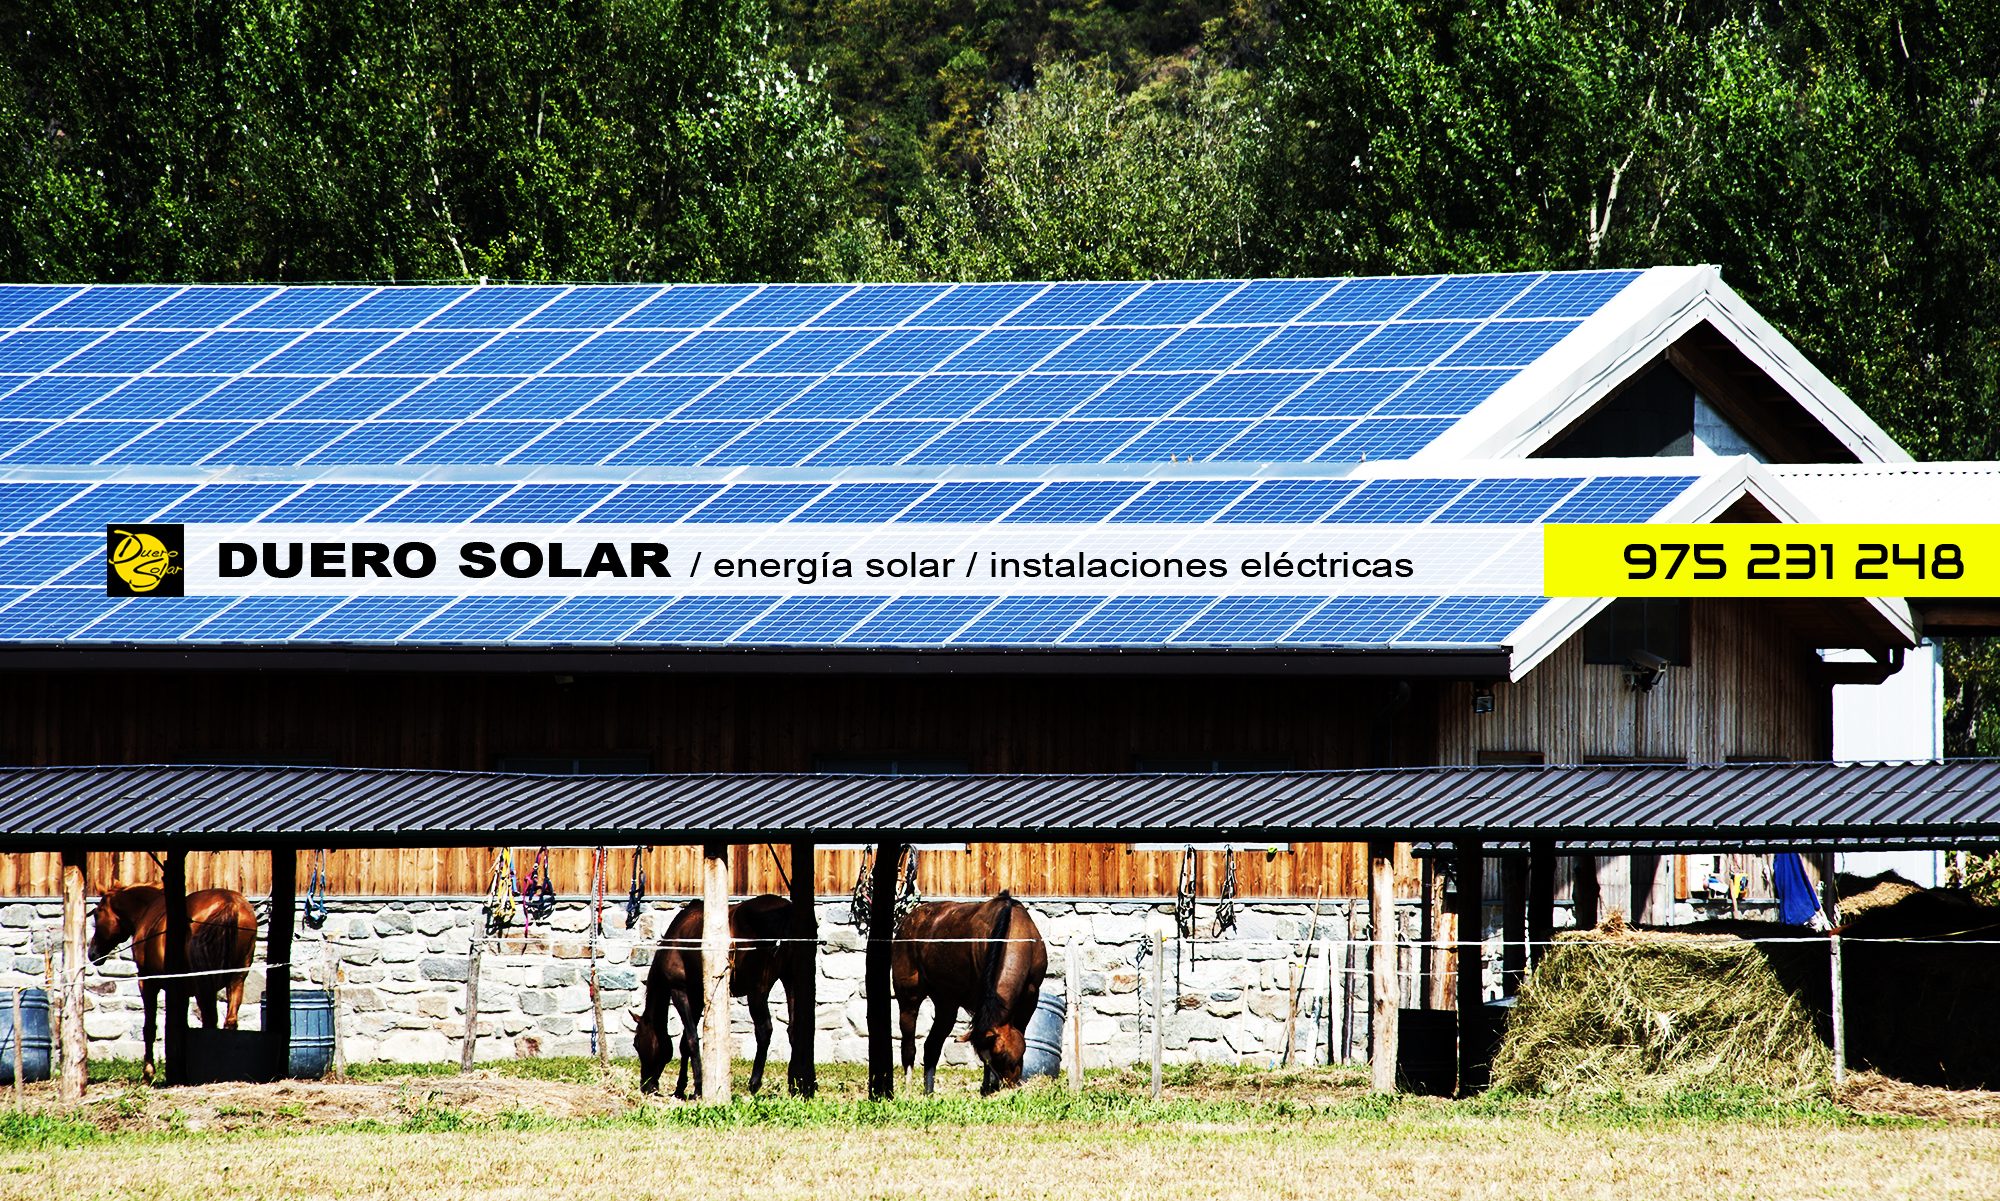 DUERO SOLAR / energía solar / instalaciones eléctricas